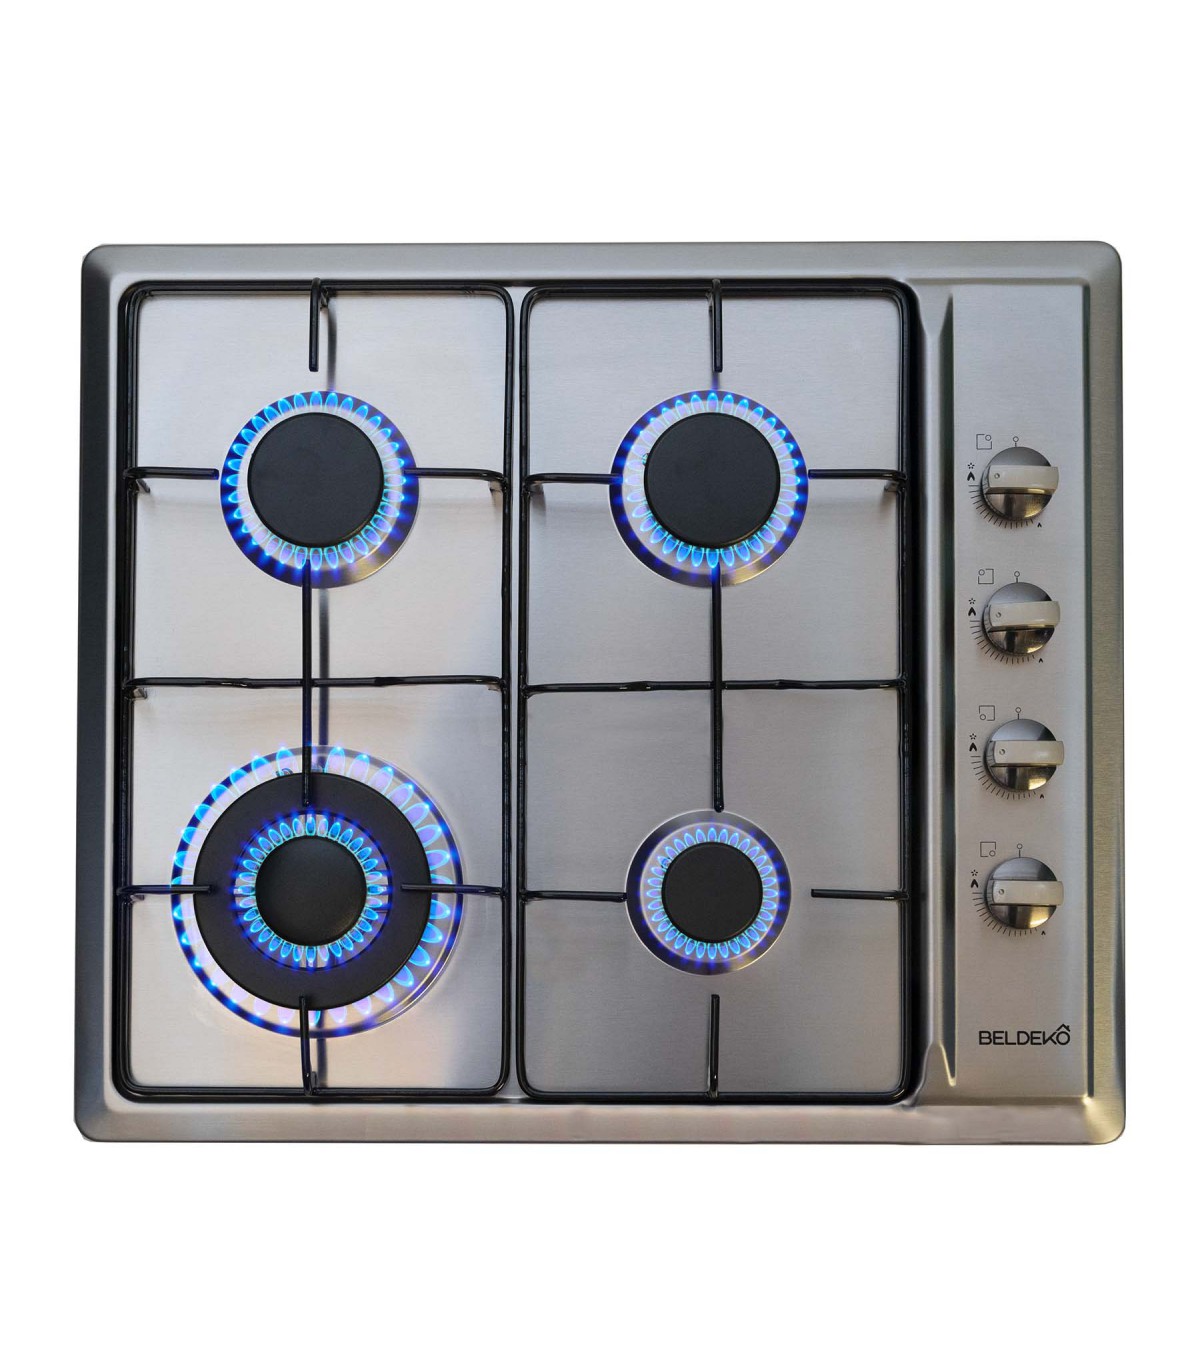 domino-electrique-beldeko inox 2 feux plaque de cuisson table de cuisson  MANETTES